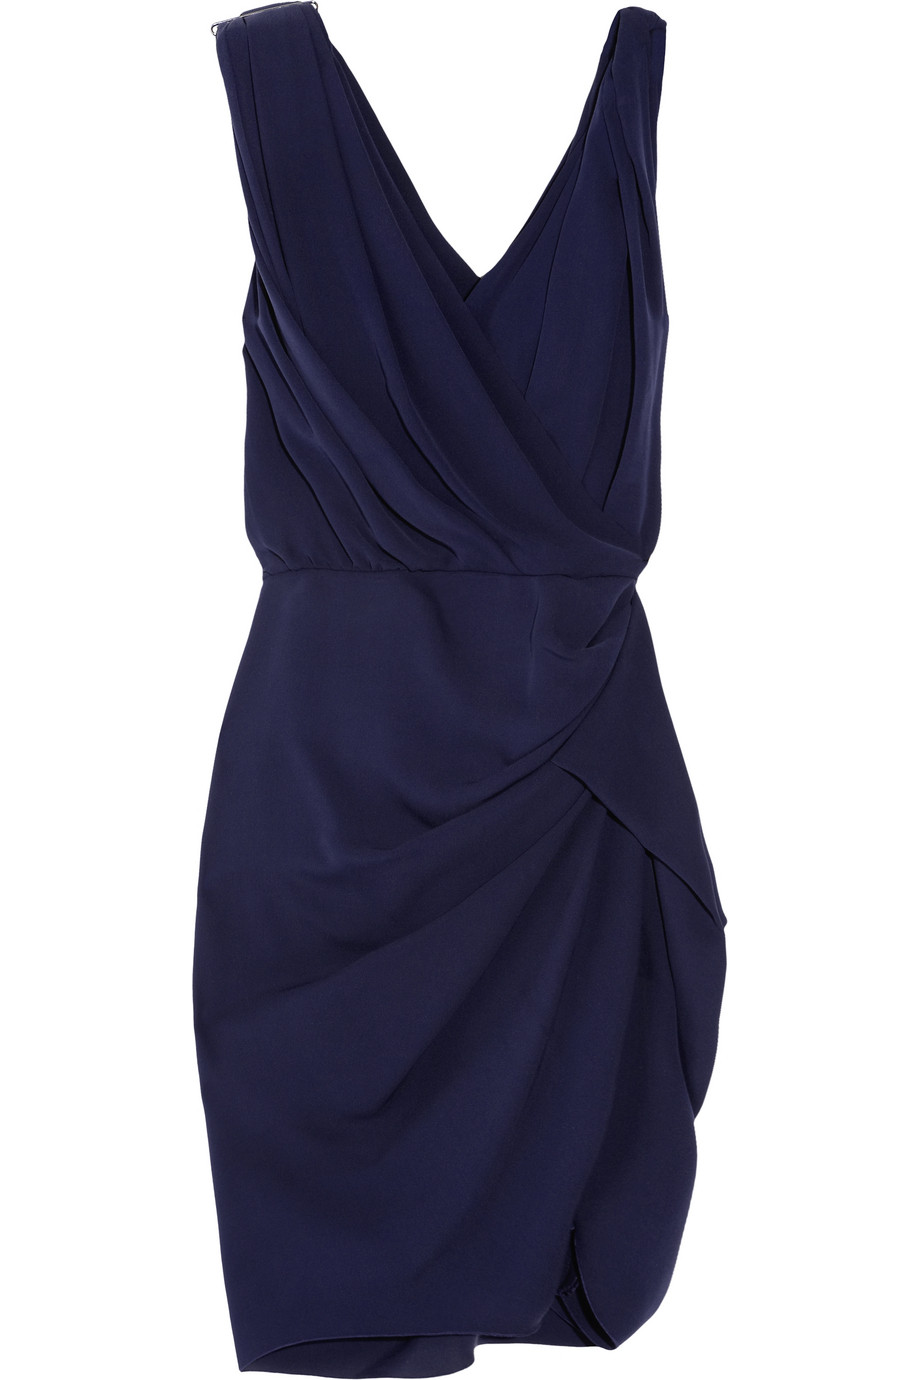 Lyst - Lanvin Silk Draped Dress in Blue